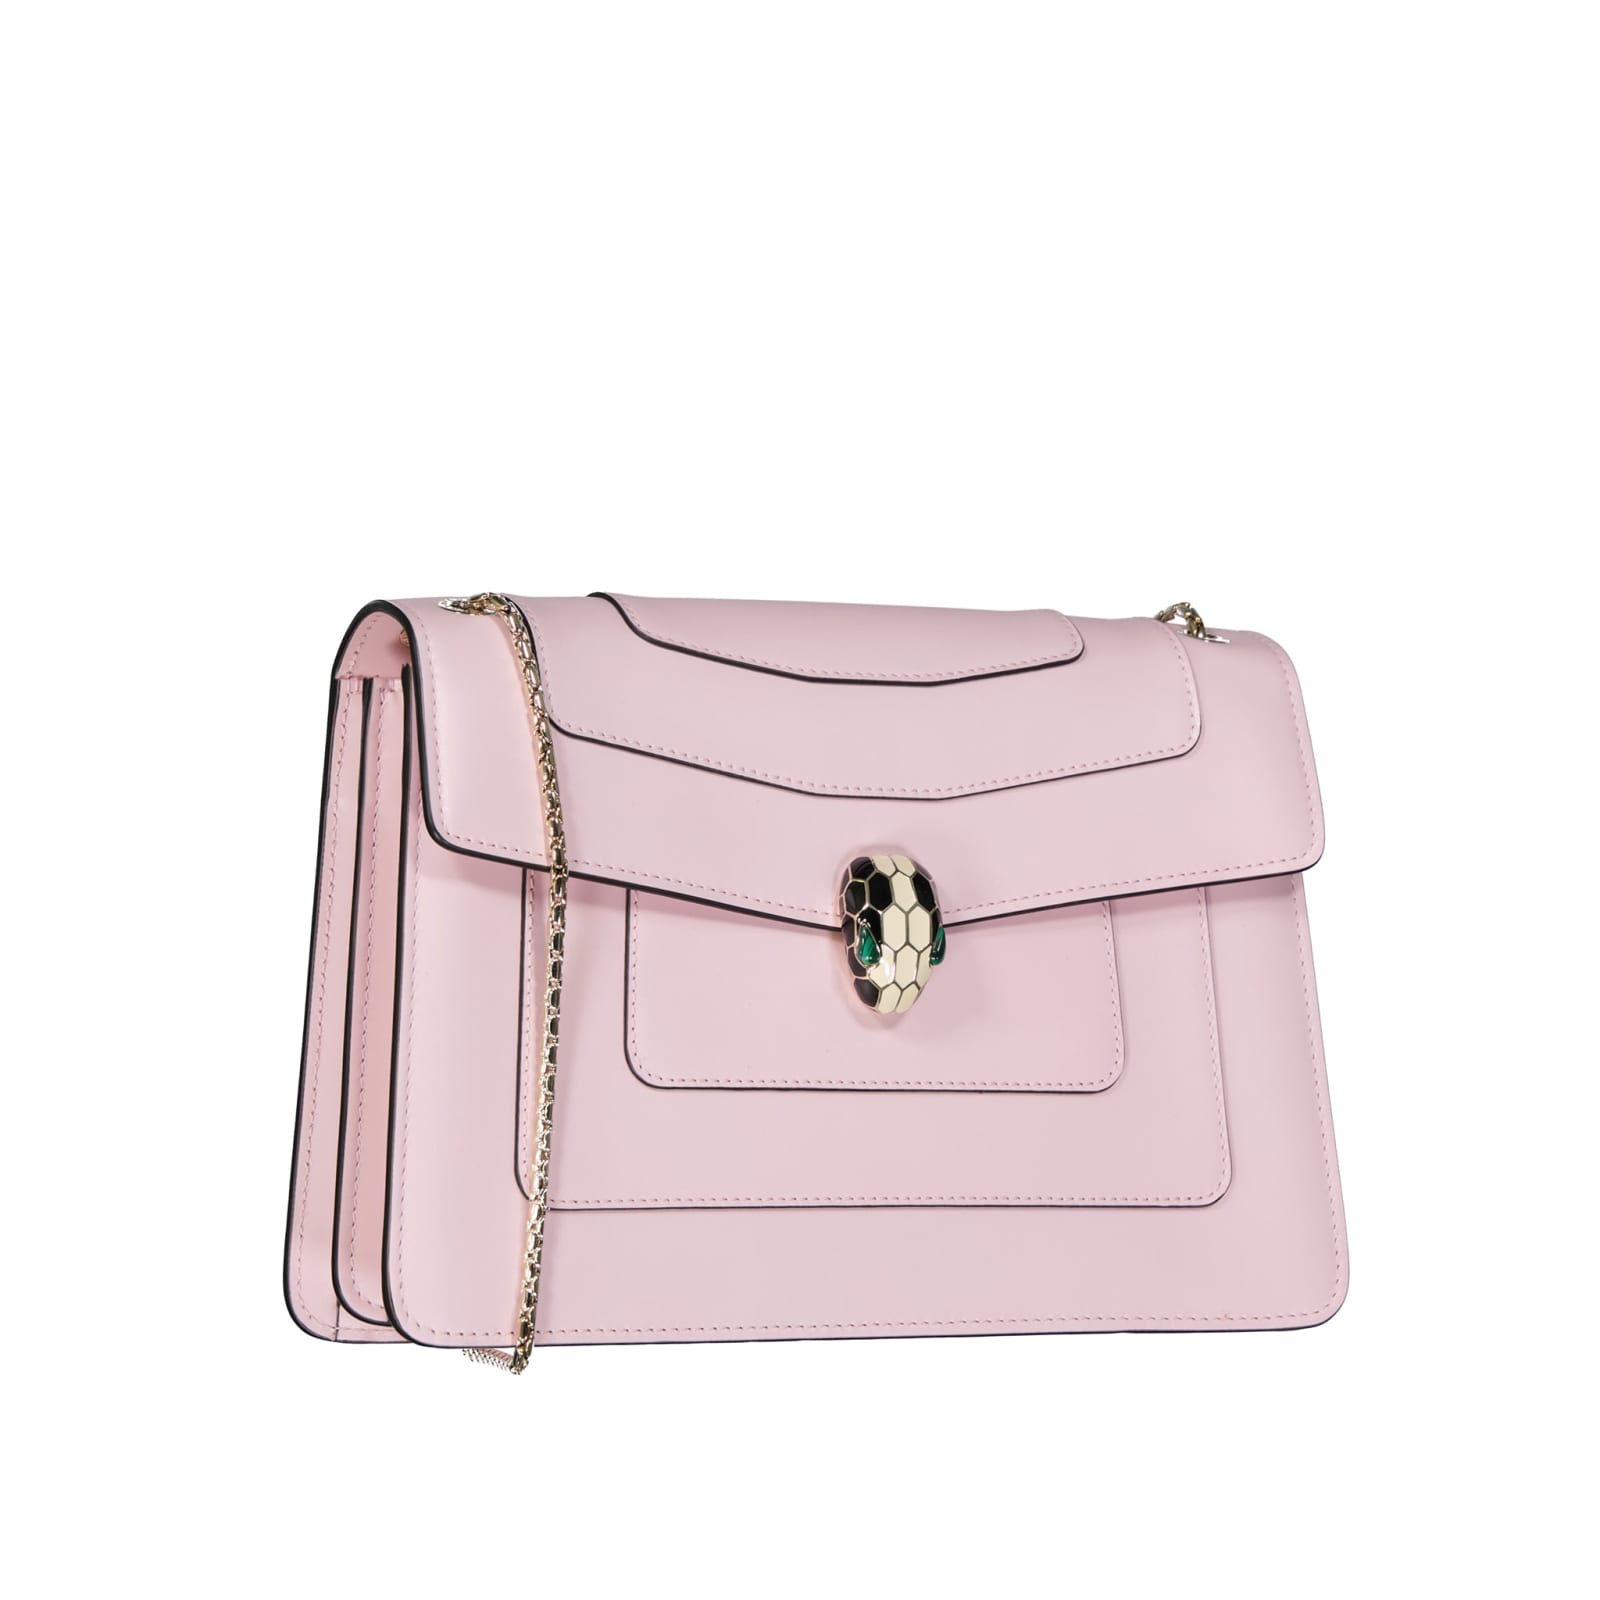 Bvlgari Serpenti Forever Mini Bag - Pink Mini Bags, Handbags - BUL52150